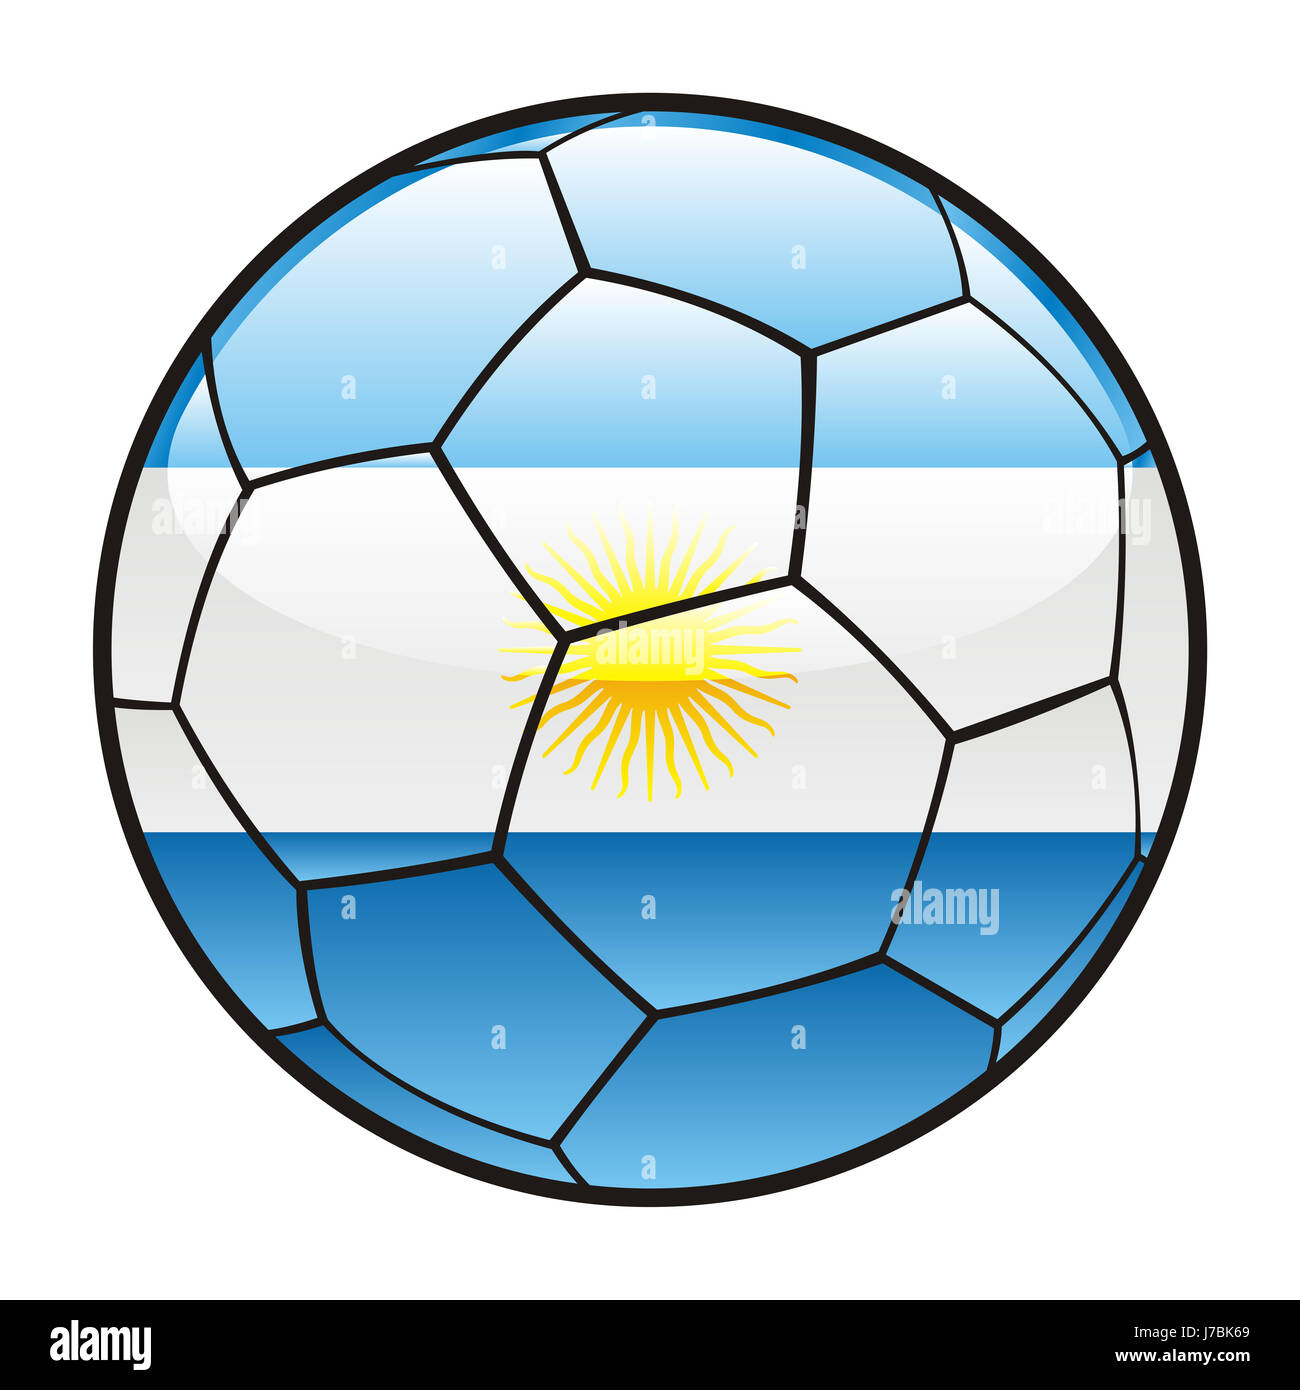 Pelota argentina ilustración vectorial del pabellón deportivo fútbol  deportes deporte Fotografía de stock - Alamy